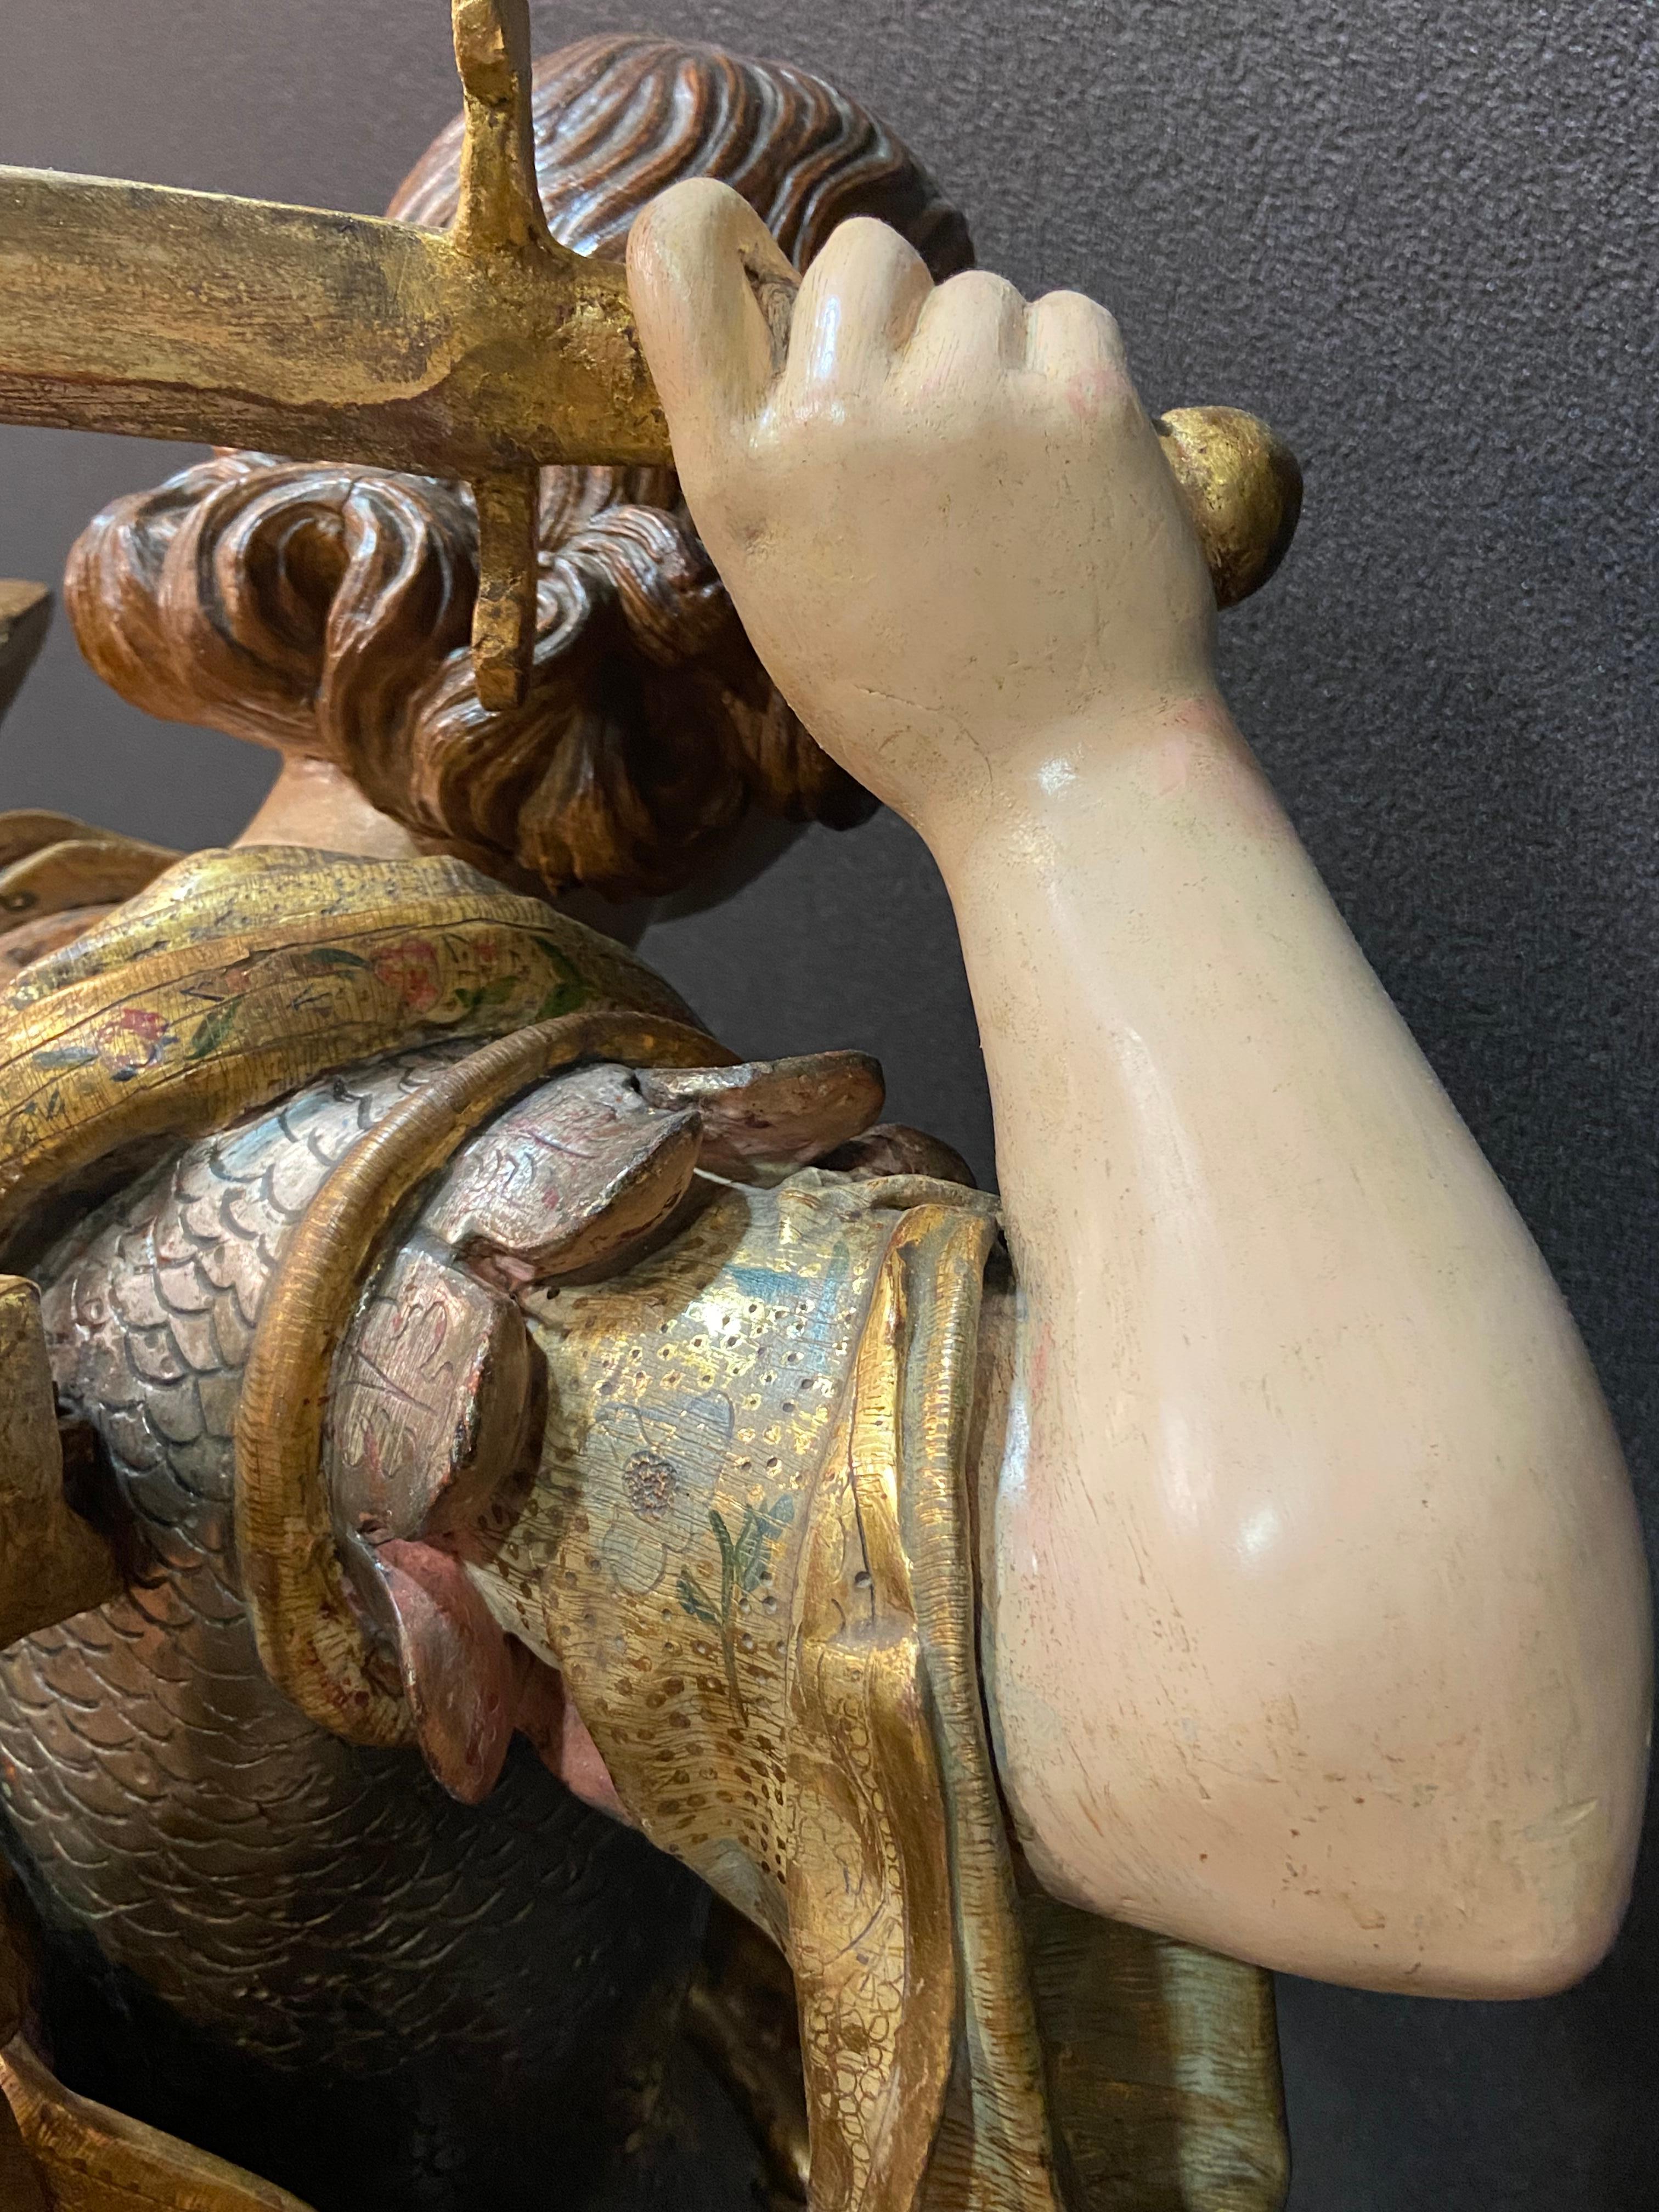 Einzigartige barocke Skulptur des Heiligen Michels. Ein Museumsstück!
Die künstlerische Prägung zeigt die typisch kastilischen Spuren in der Konzeption und Interpretation des Themas. Dies ermöglicht es uns, die von Gregorio Fernández (1576-1636)